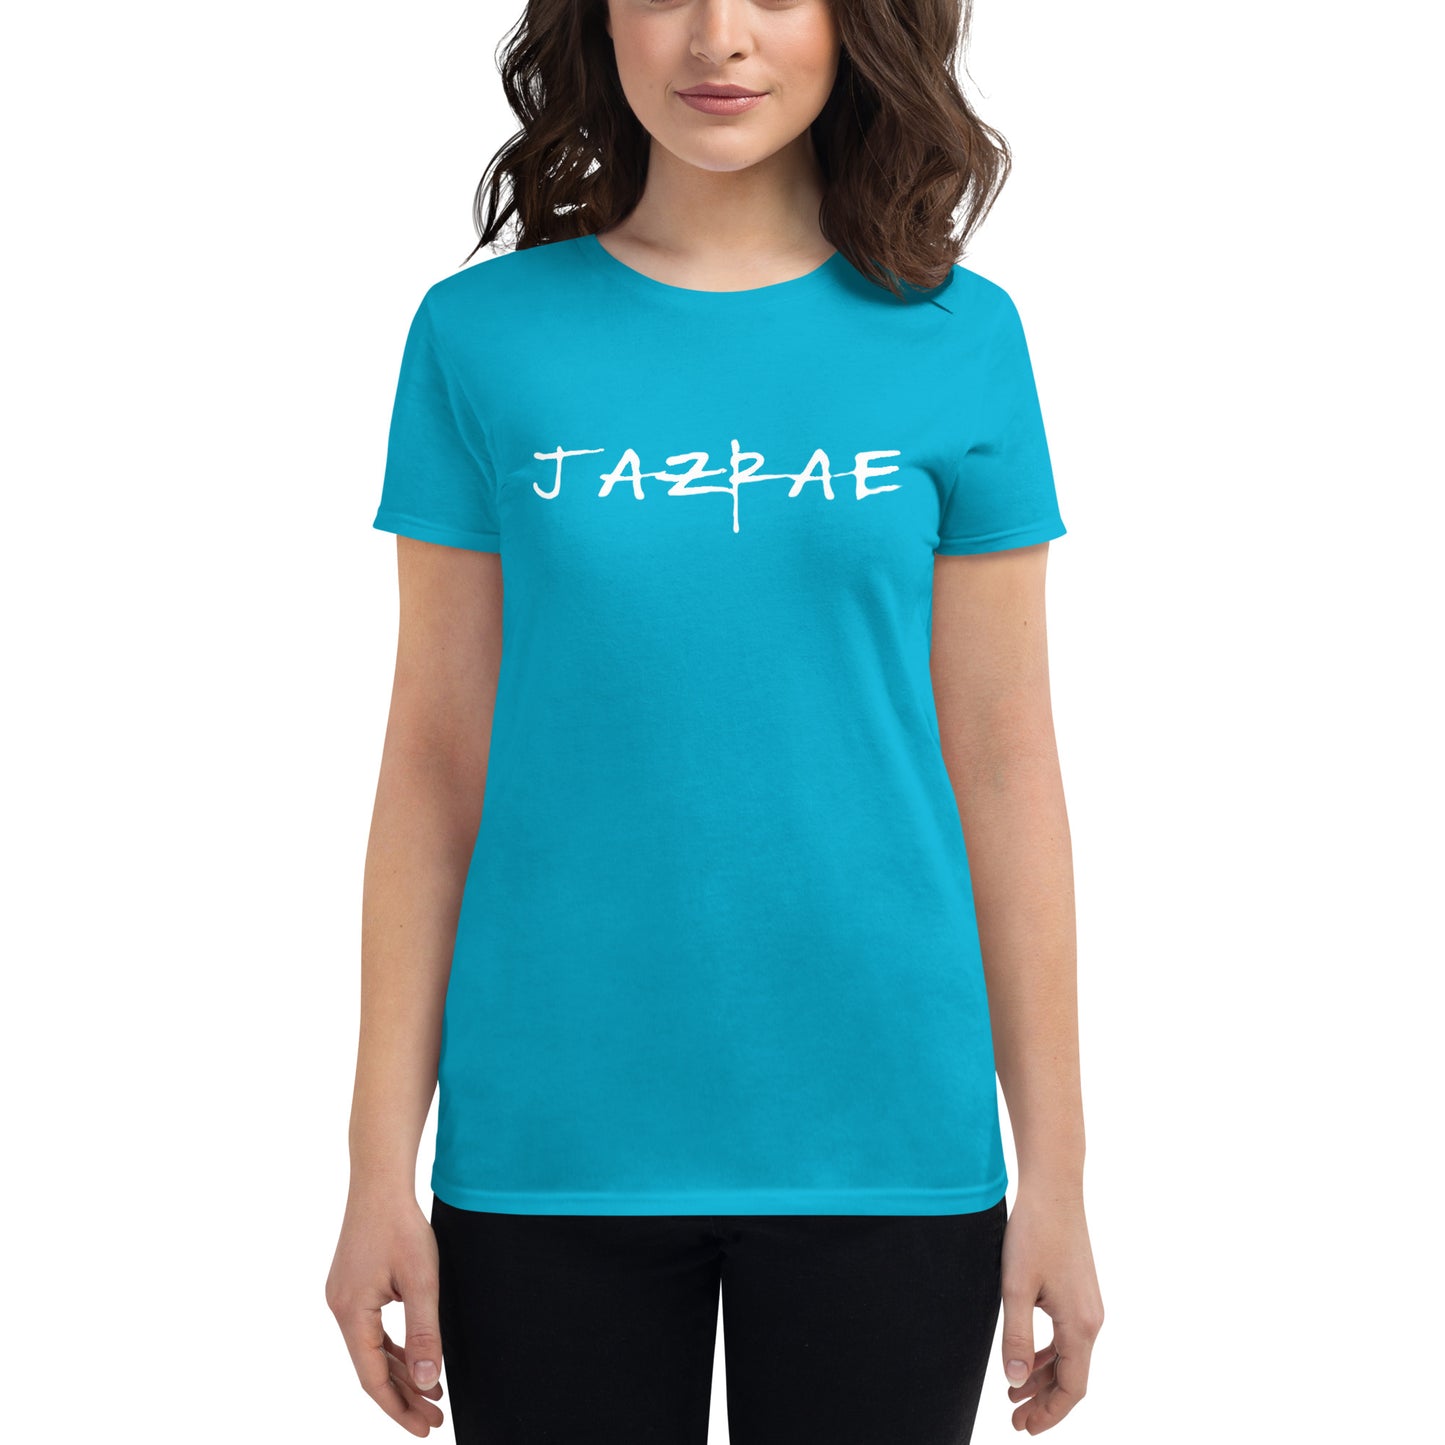 JAZRAE Women's short sleeve t-shirt